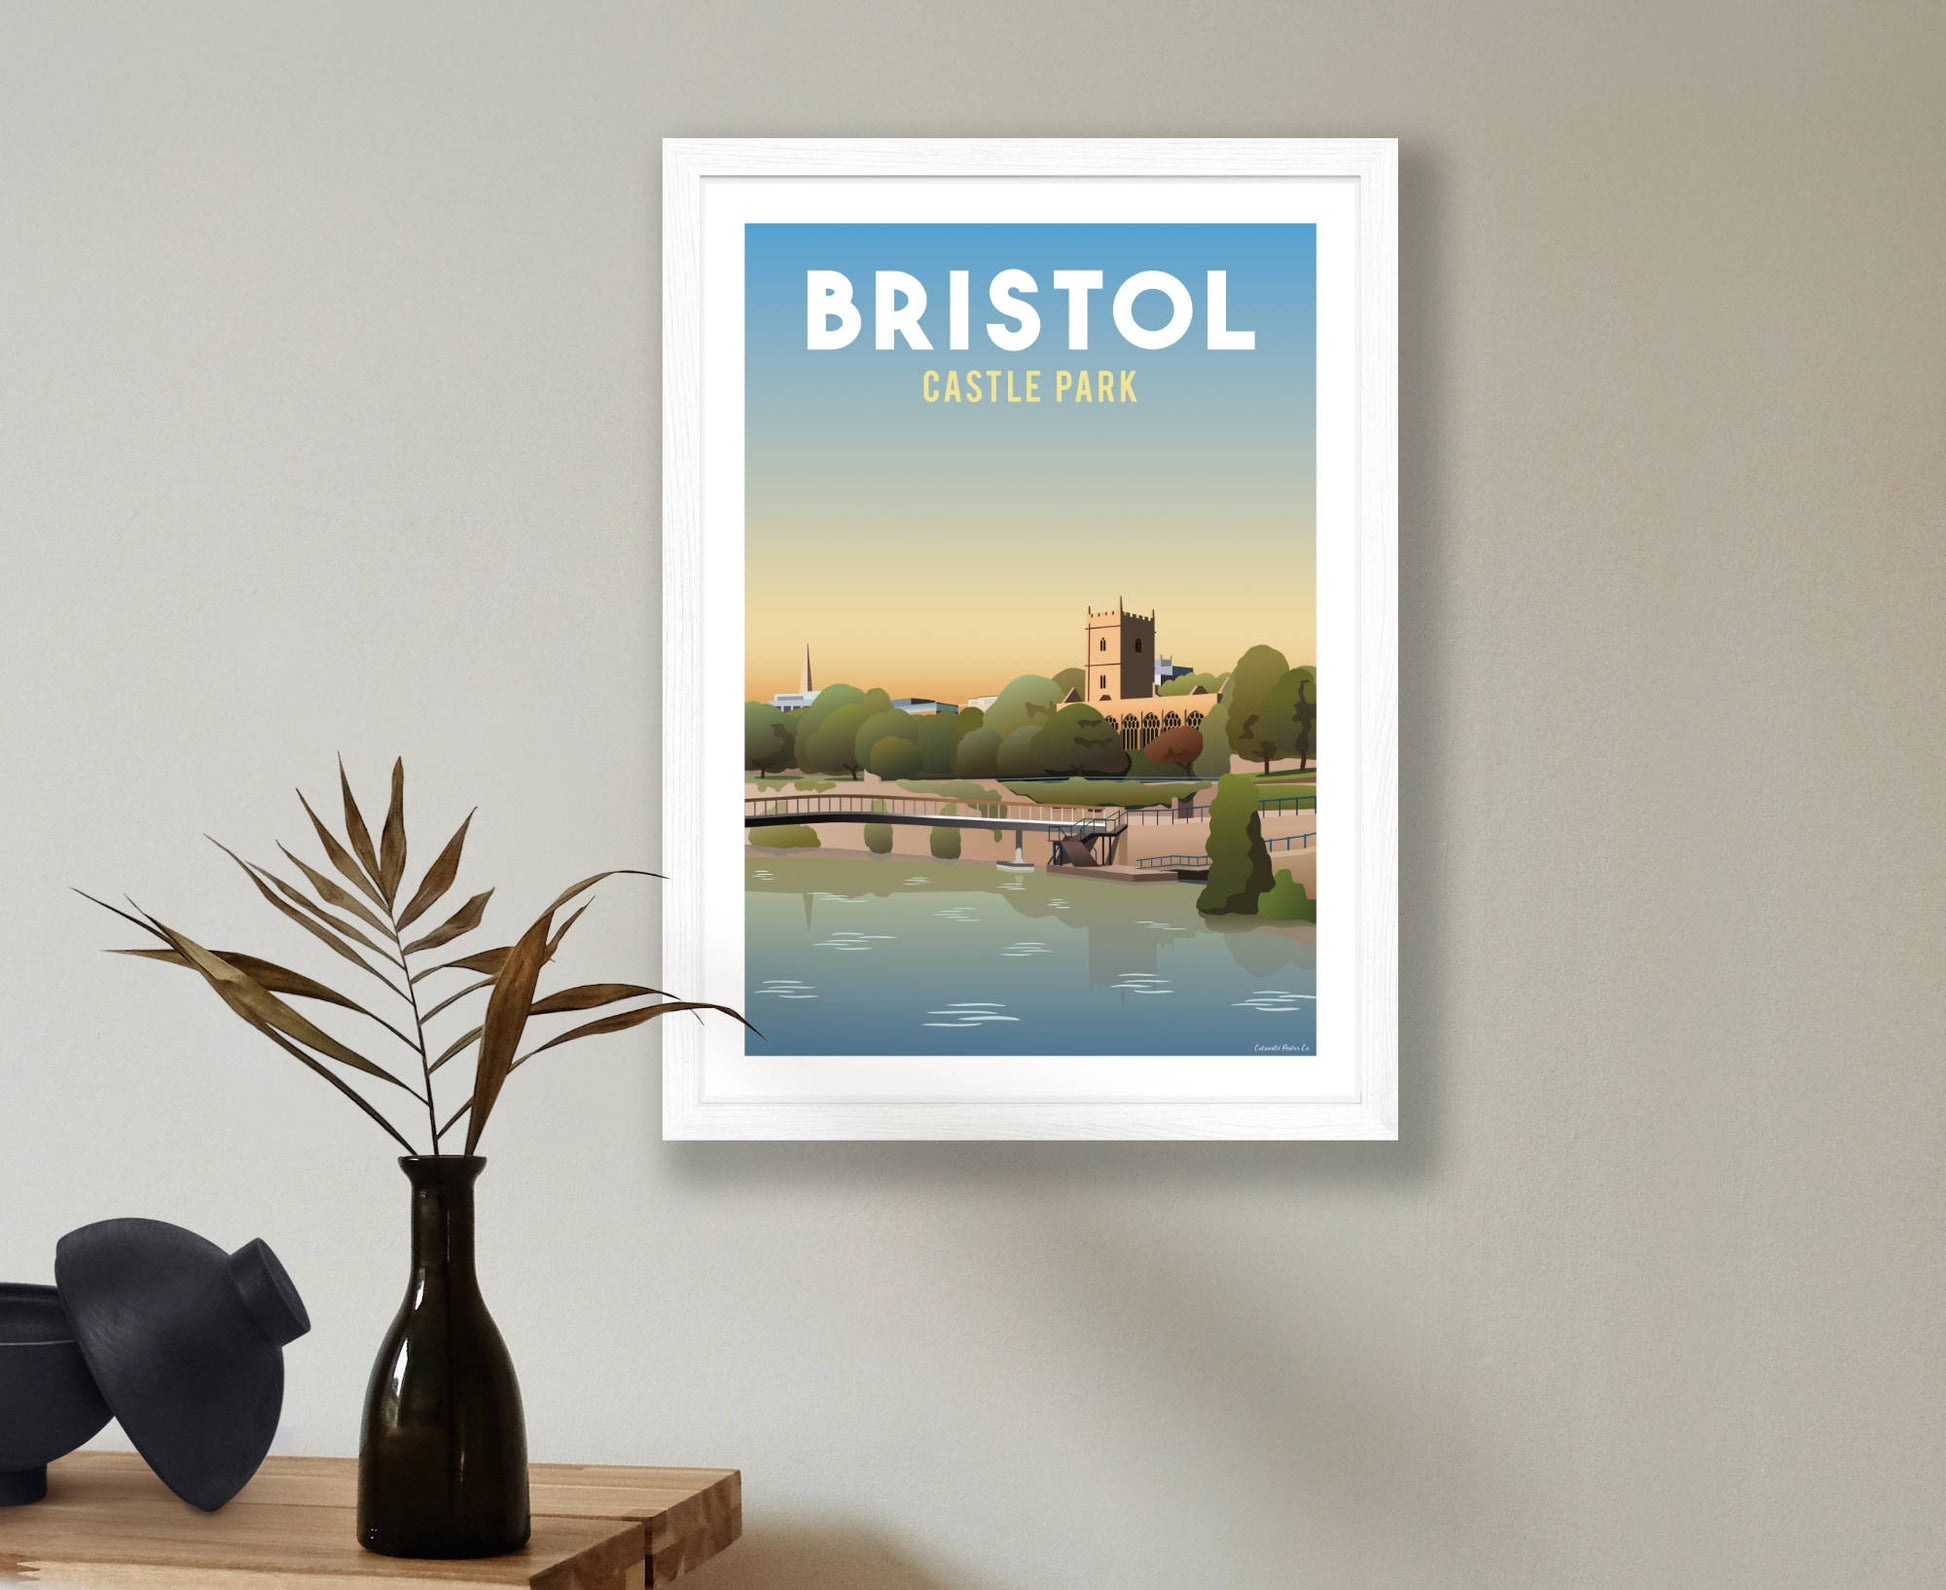 Bristol Castle Park Poster in white frame